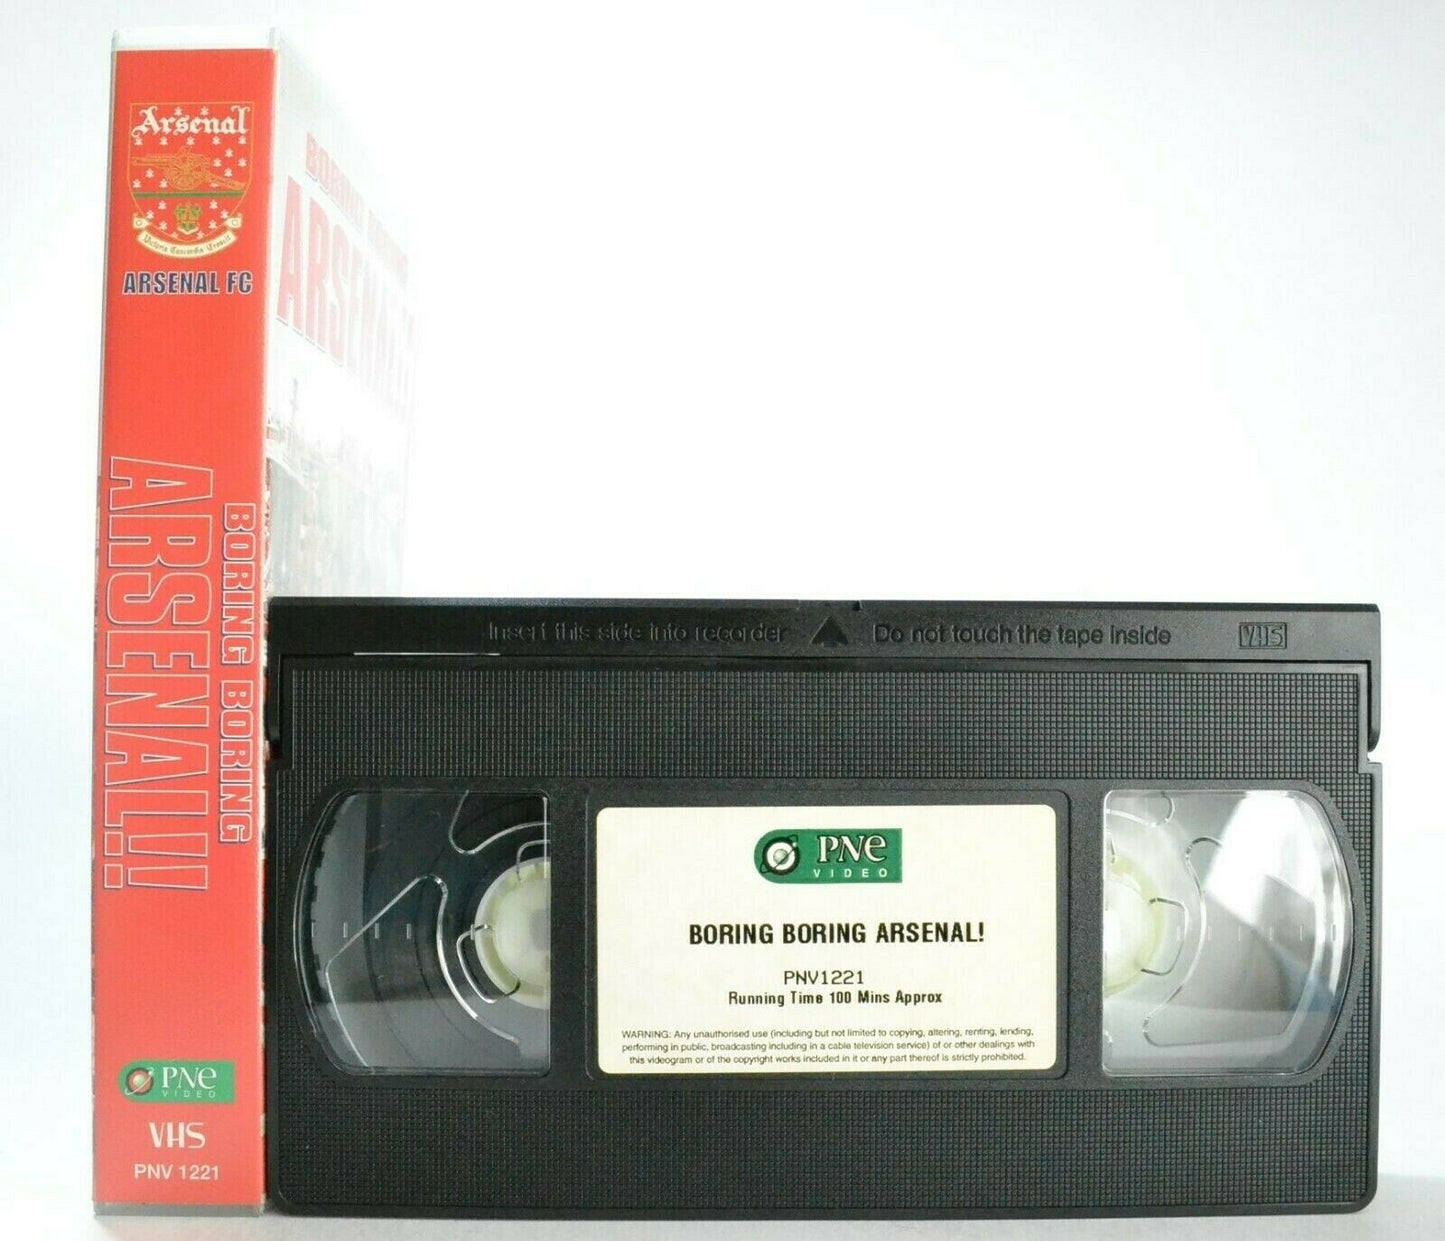 Boring Boring Arsenal: Season Review 1997/98 - Gunners - Football - Sports - VHS-